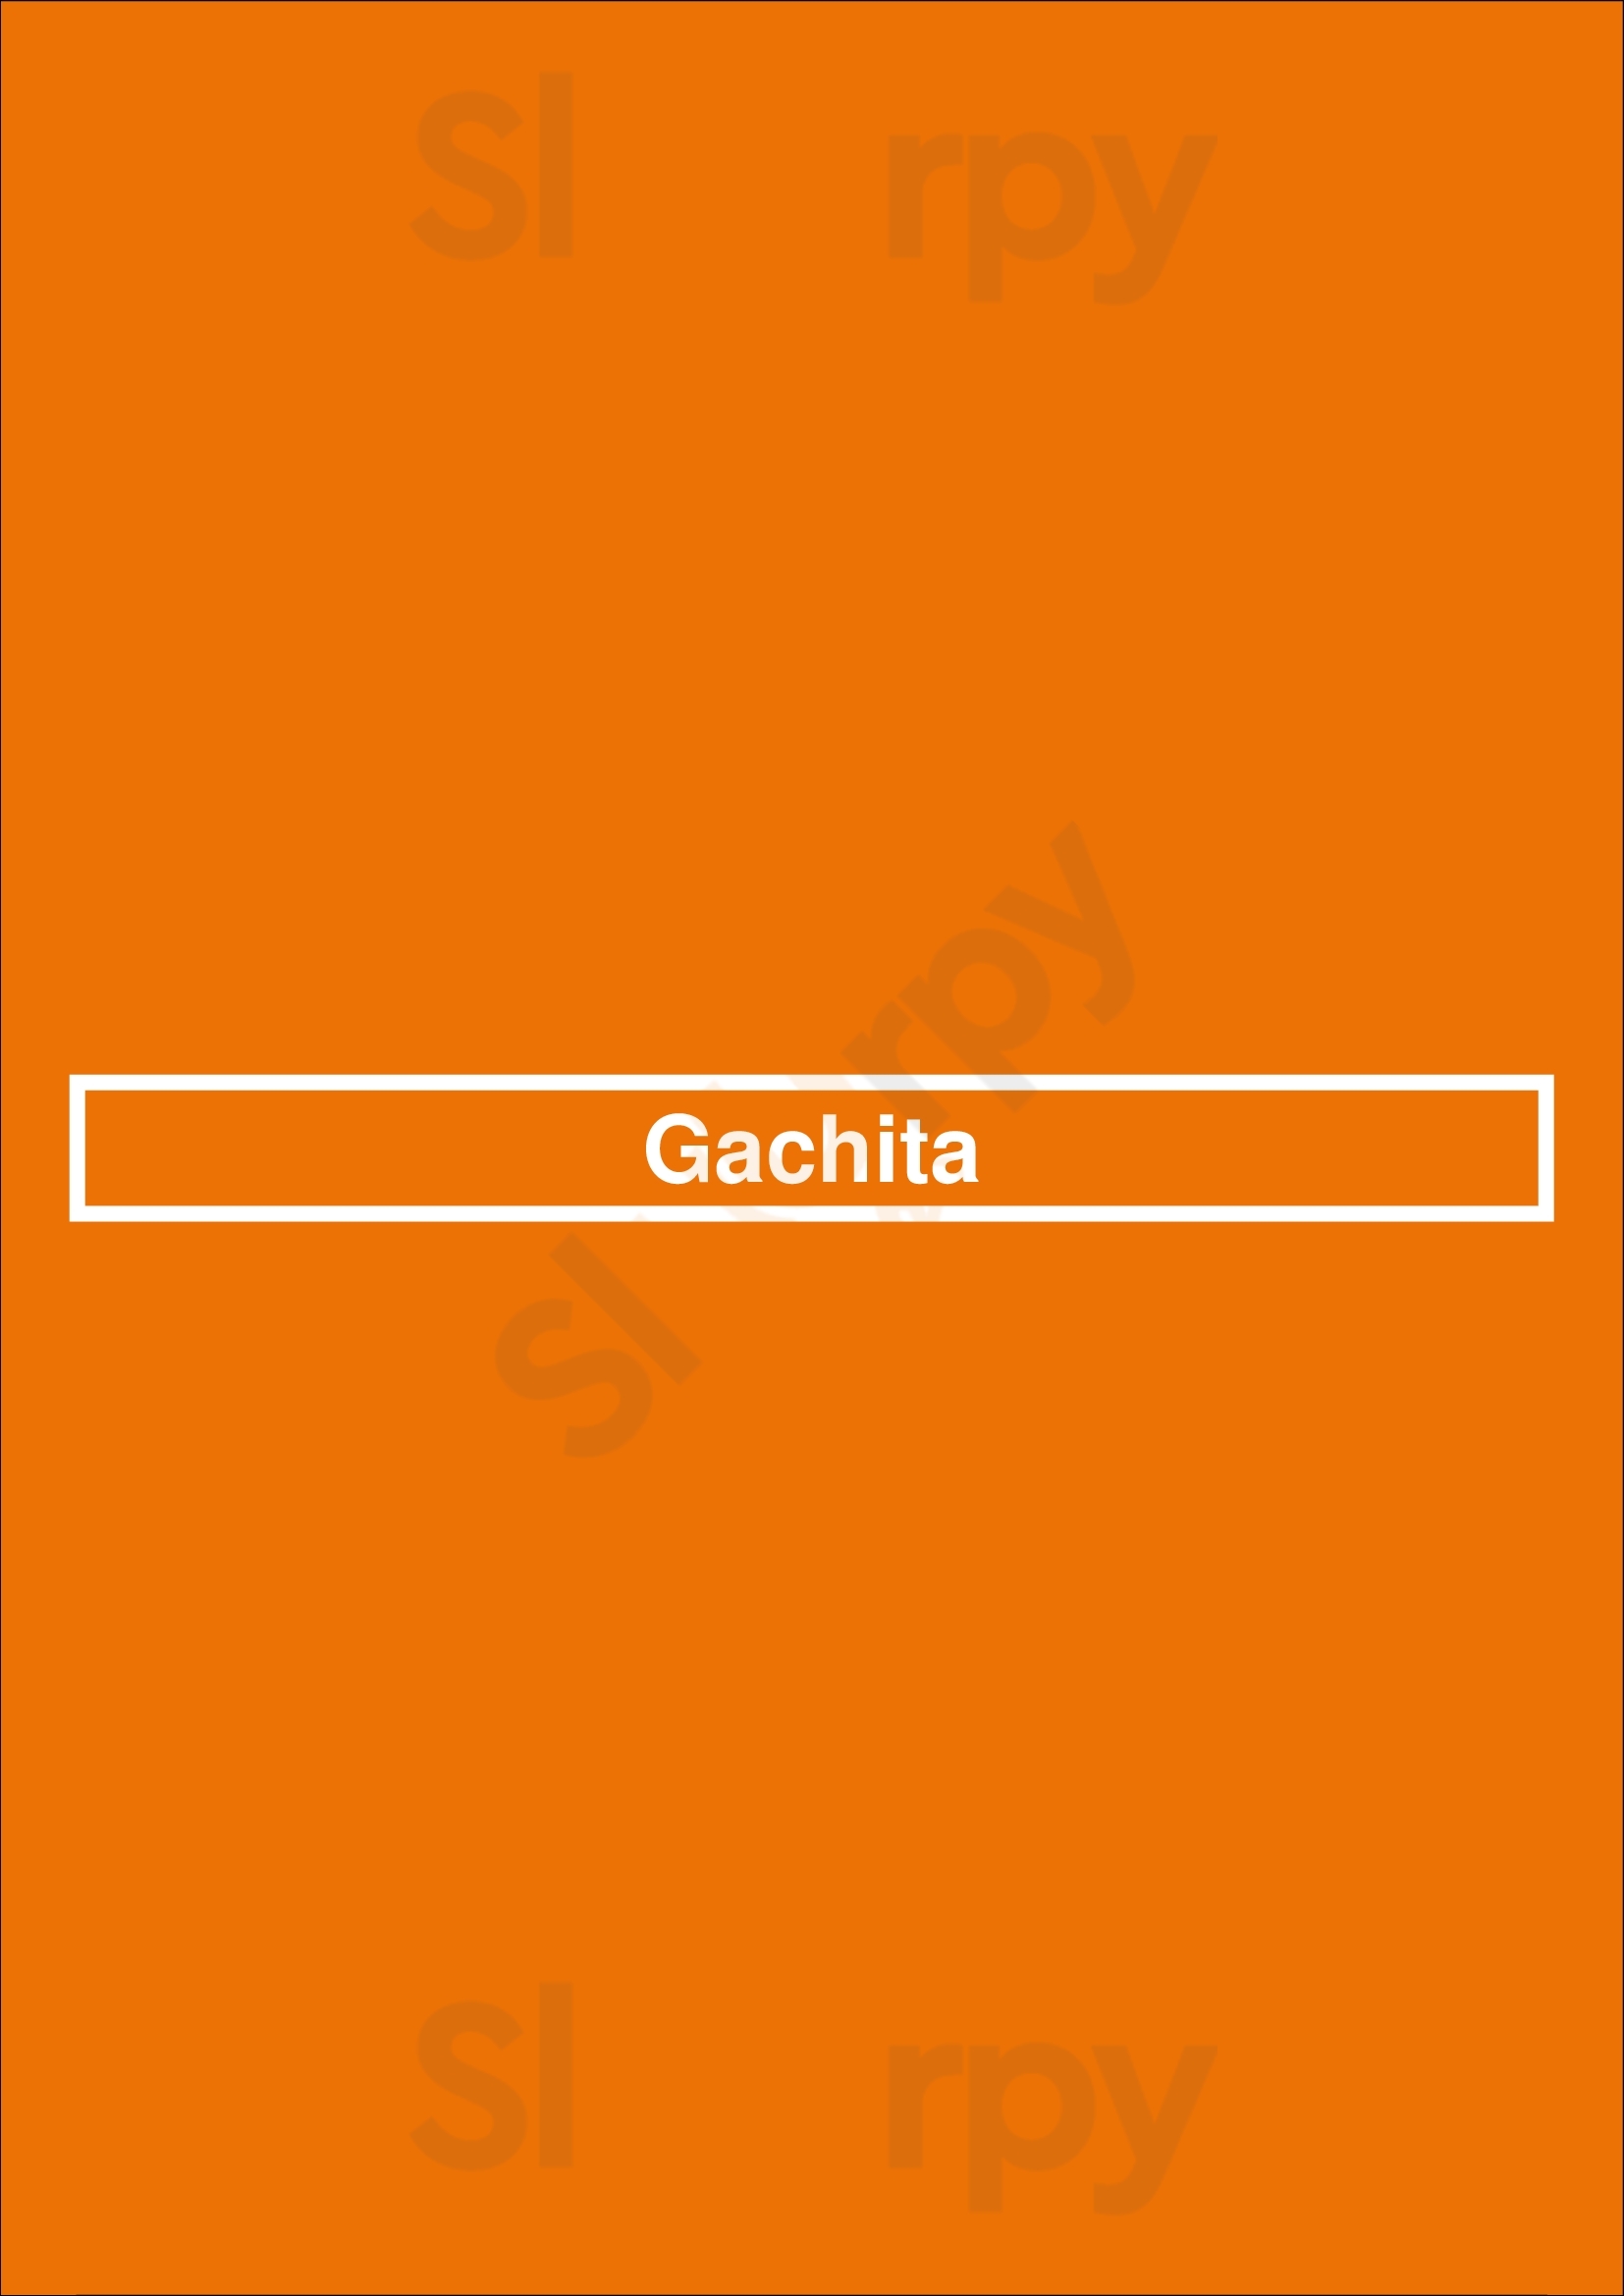 Gachita Purmerend Menu - 1